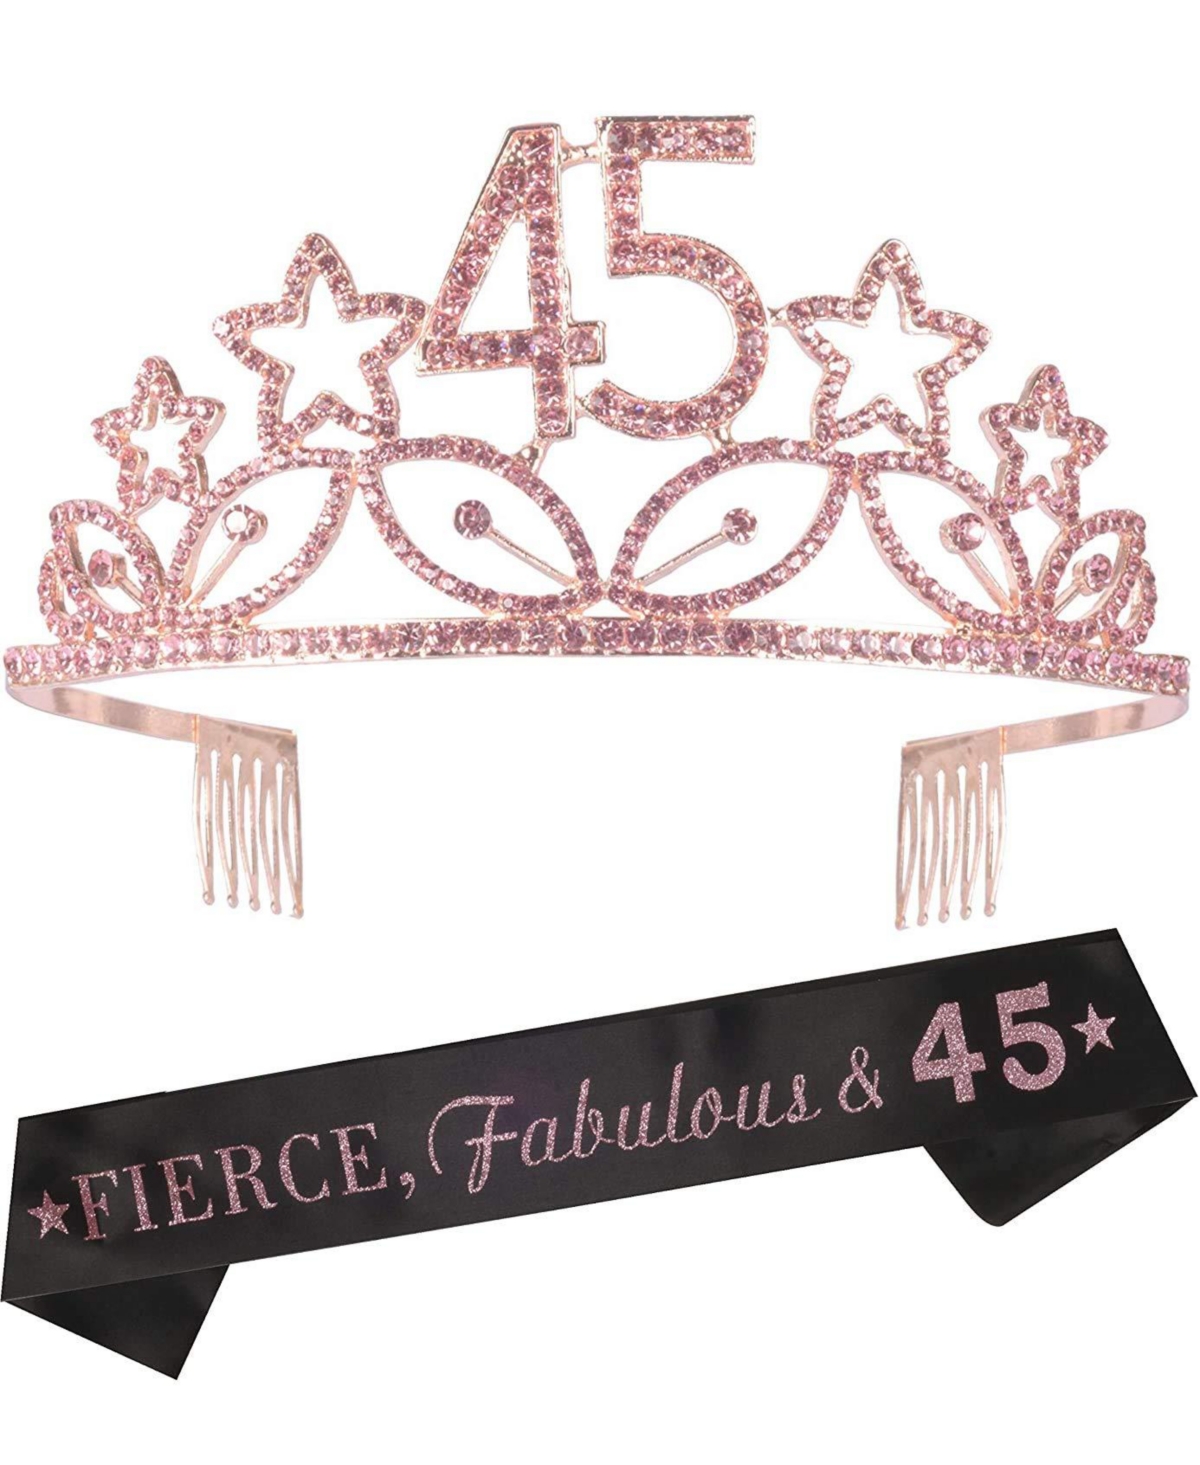 45th Birthday Sash and Tiara for Women - Fabulous Glitter Sash + Stars Rhinestone Pink Premium Metal Tiara for Her, 45th Birthday Gifts for 45 Party -